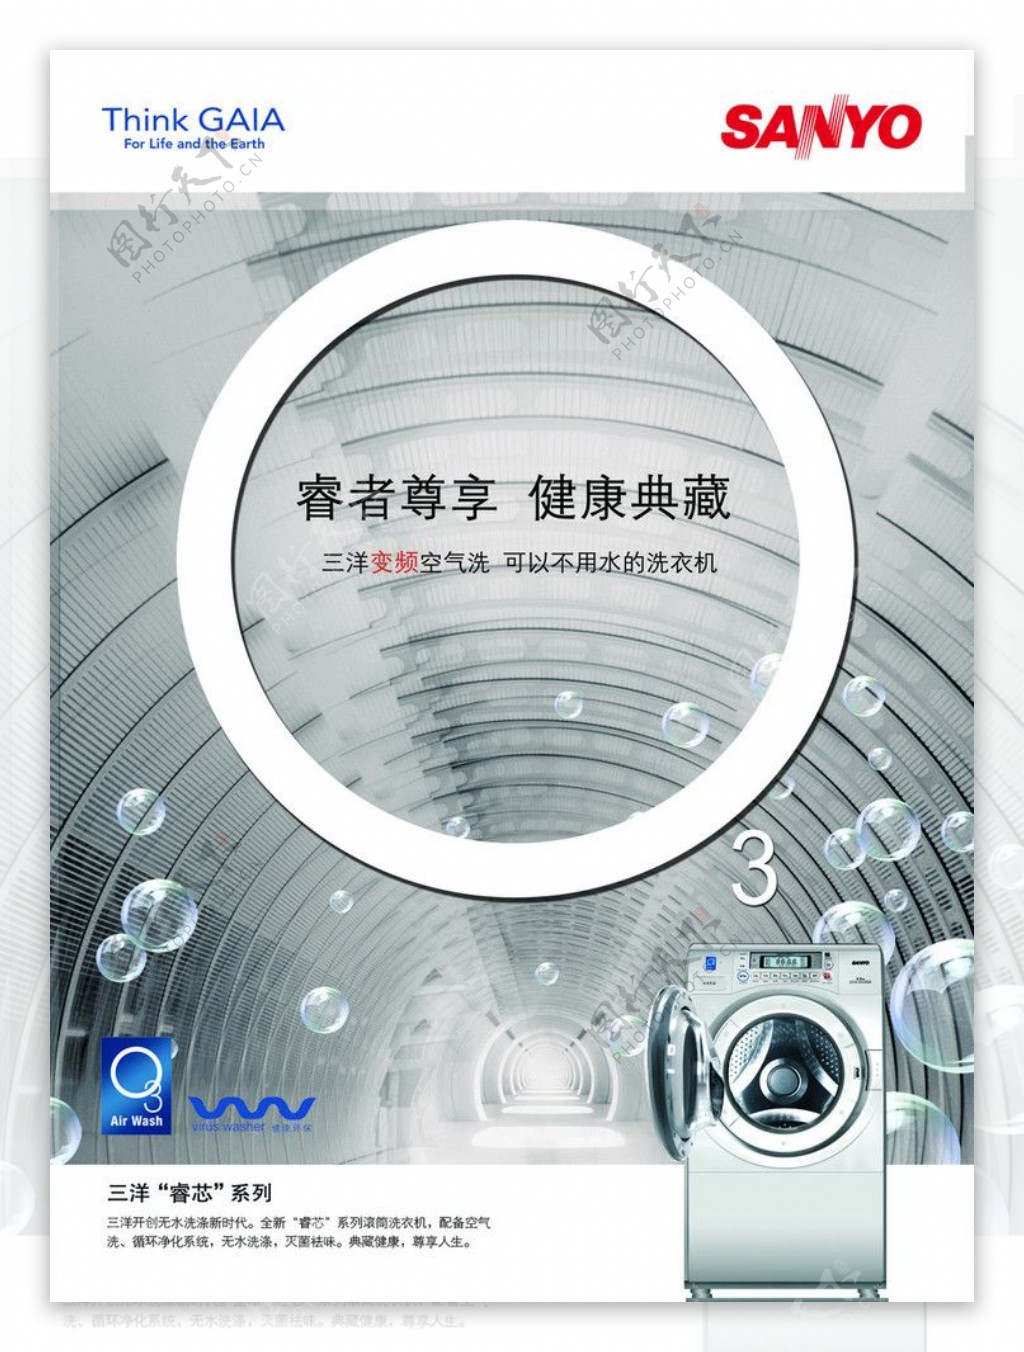 三洋睿芯系列洗衣机广告PSD图片